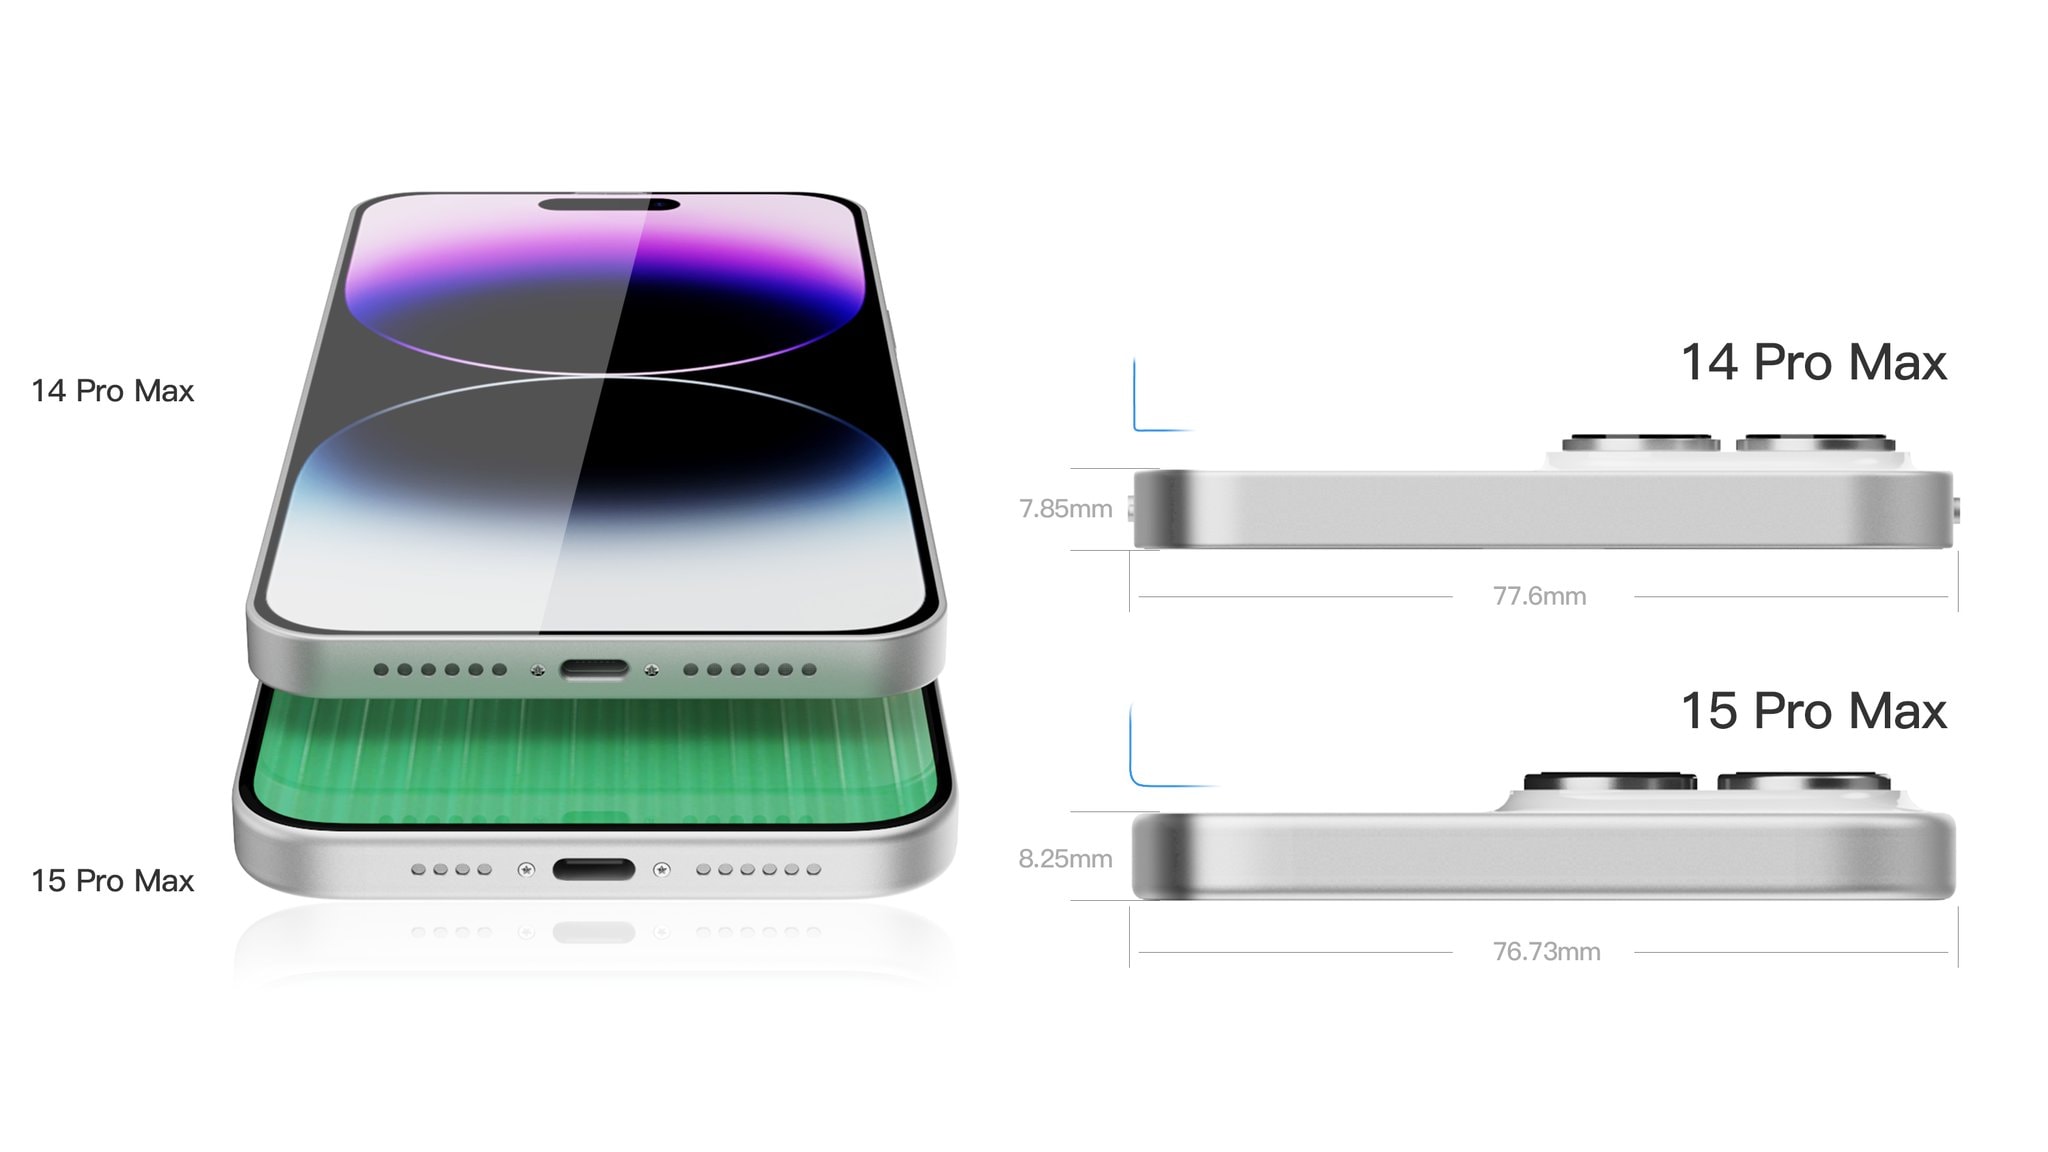 Rendus de comparaison d'épaisseur entre iPhone 14 Pro Max et iPhone 15 Pro Max